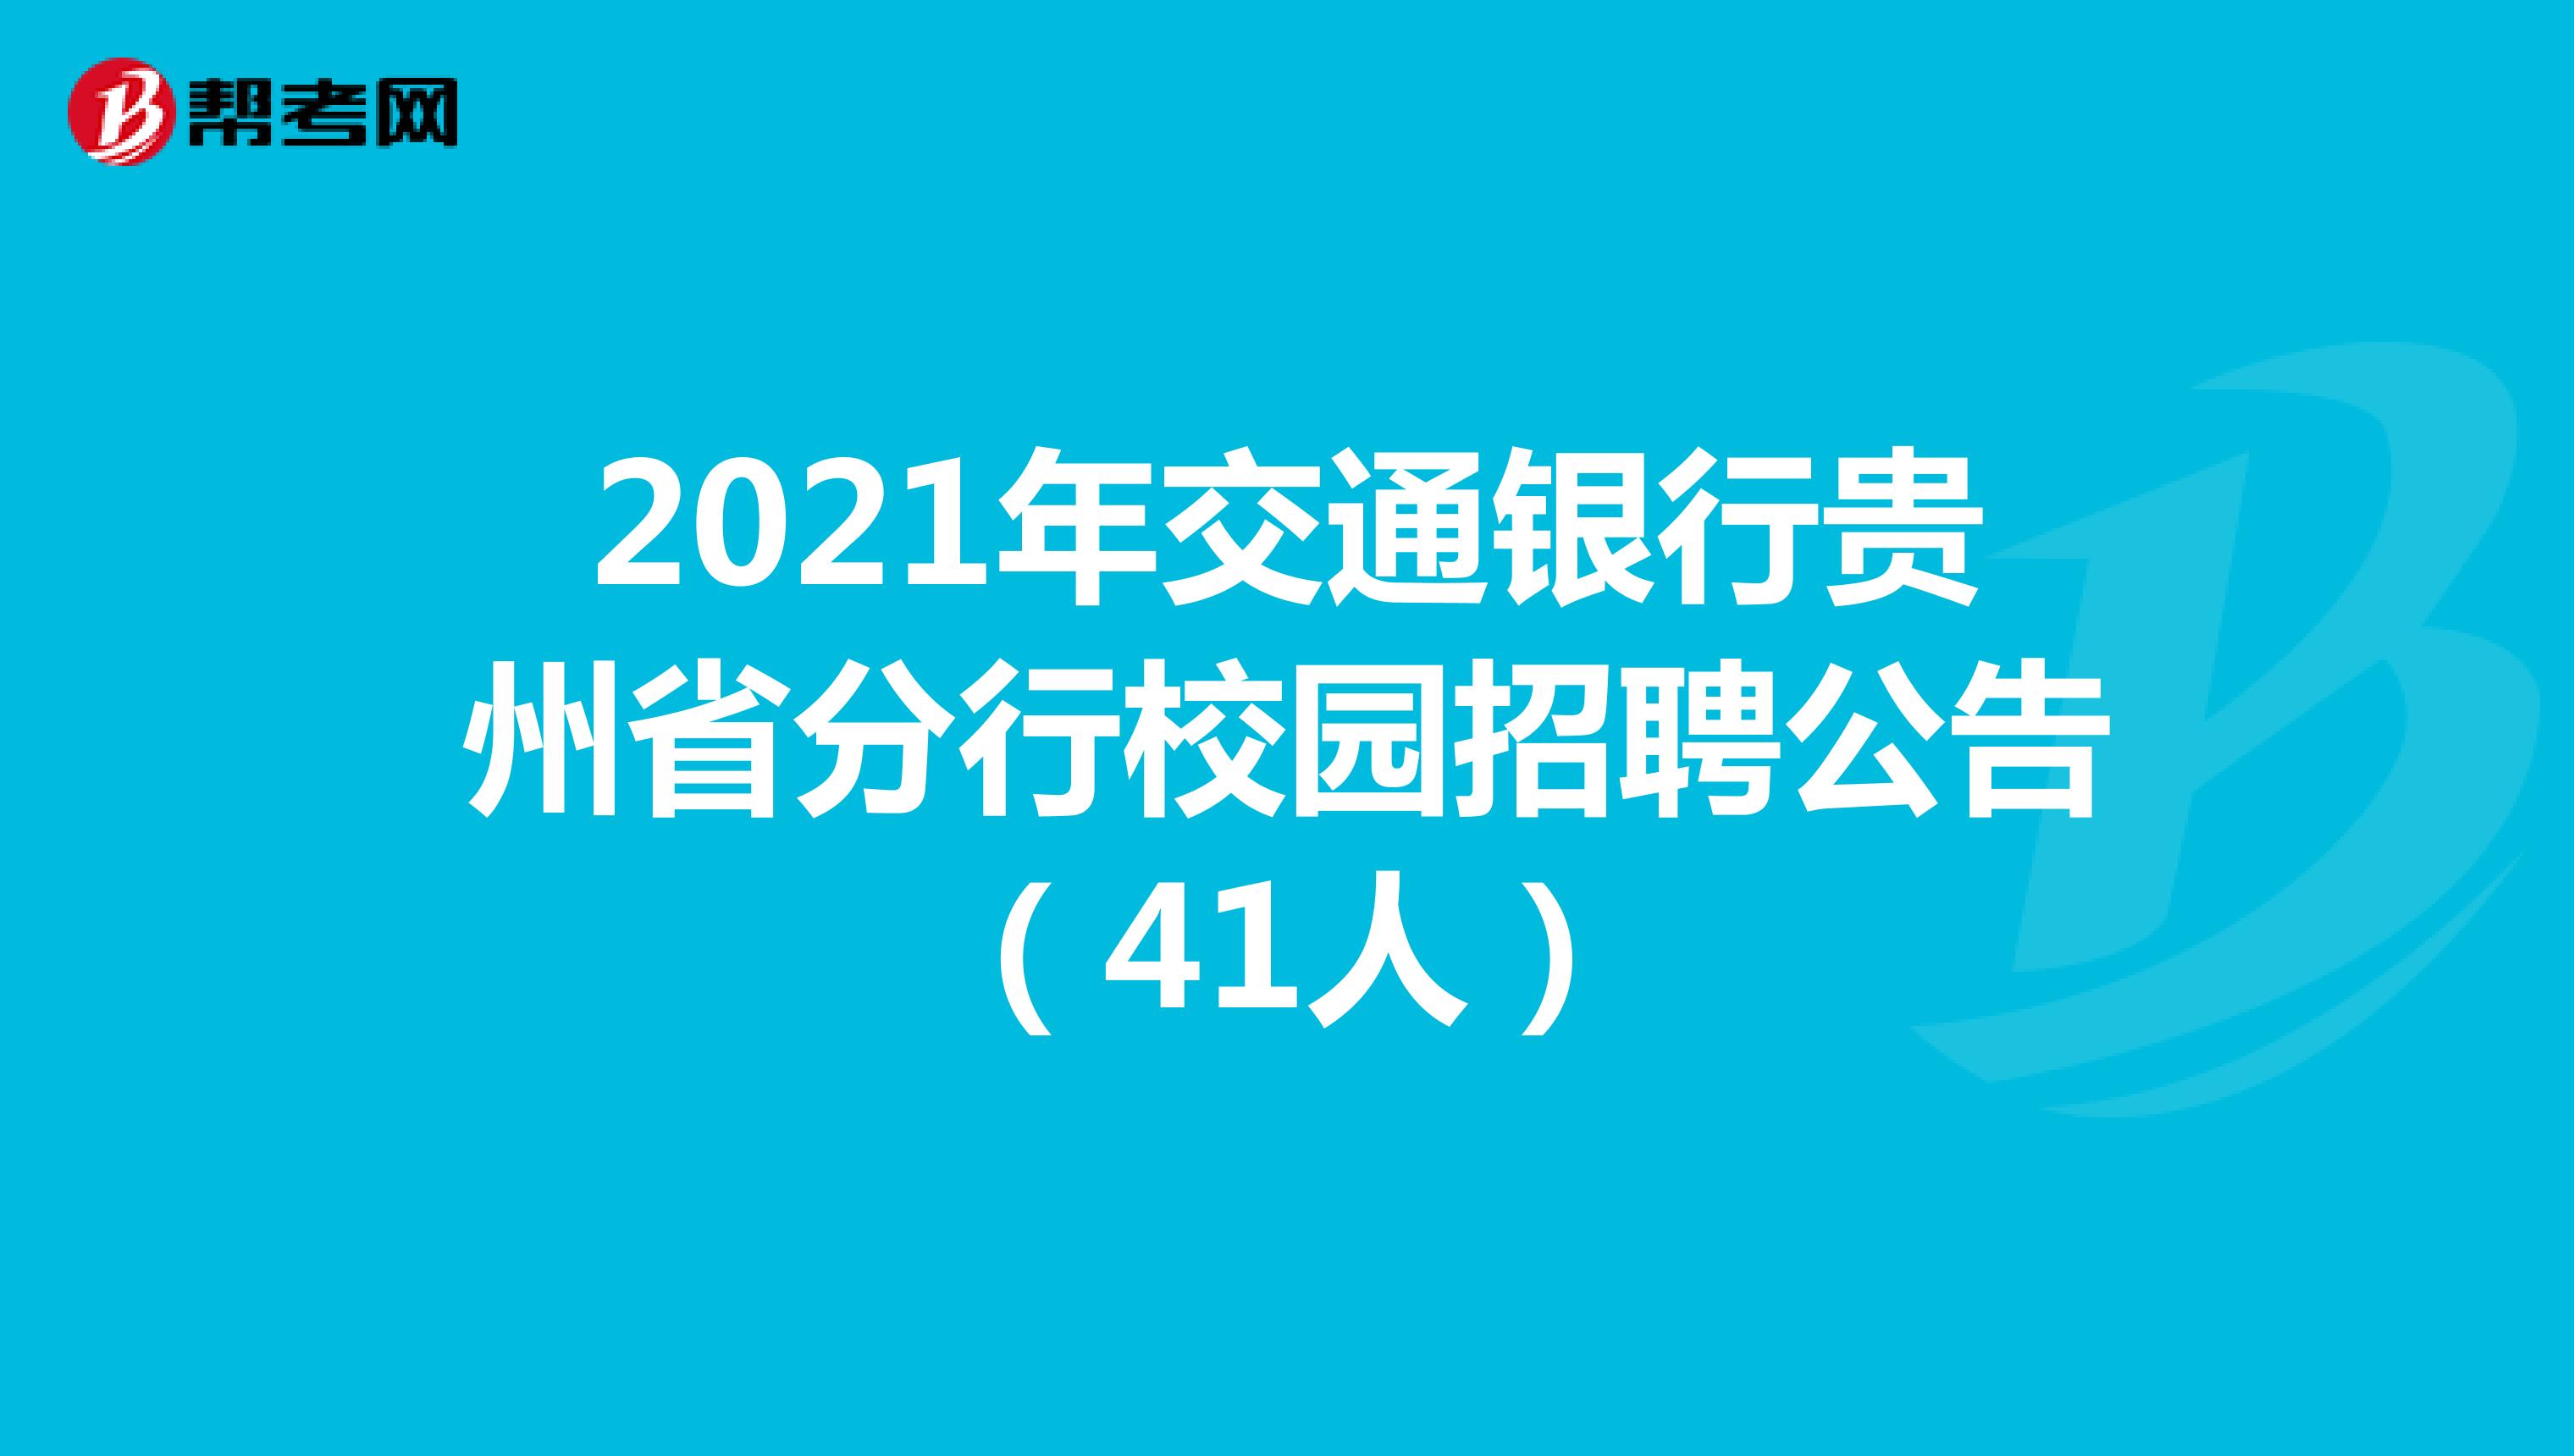 2021年交通银行贵州省分行校园招聘公告（41人）